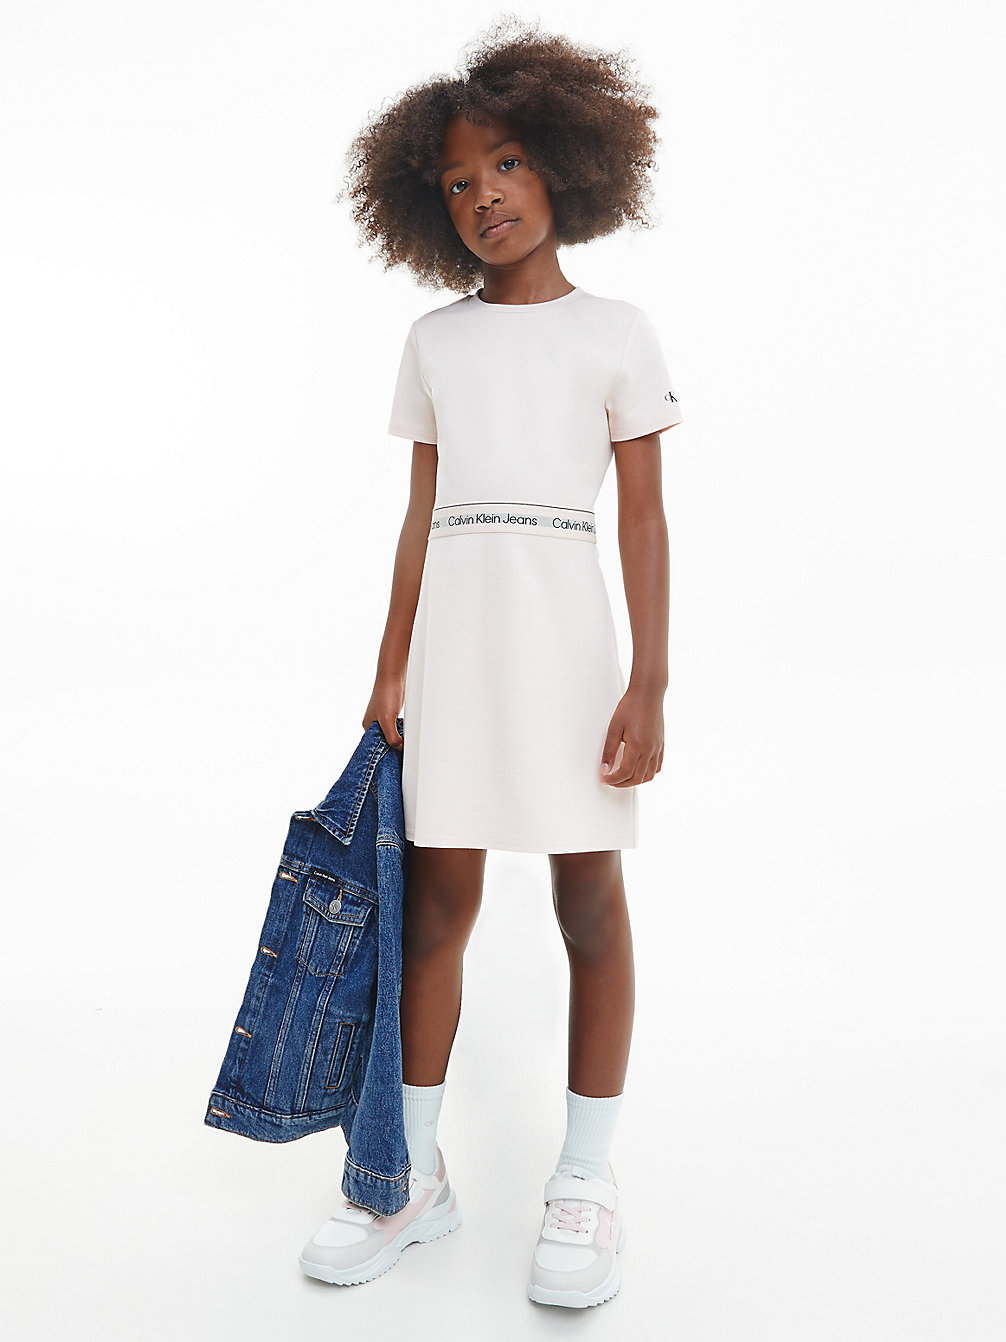 CREOLE PINK > Schmal Ausgestelltes Milano Kleid > undefined girls - Calvin Klein